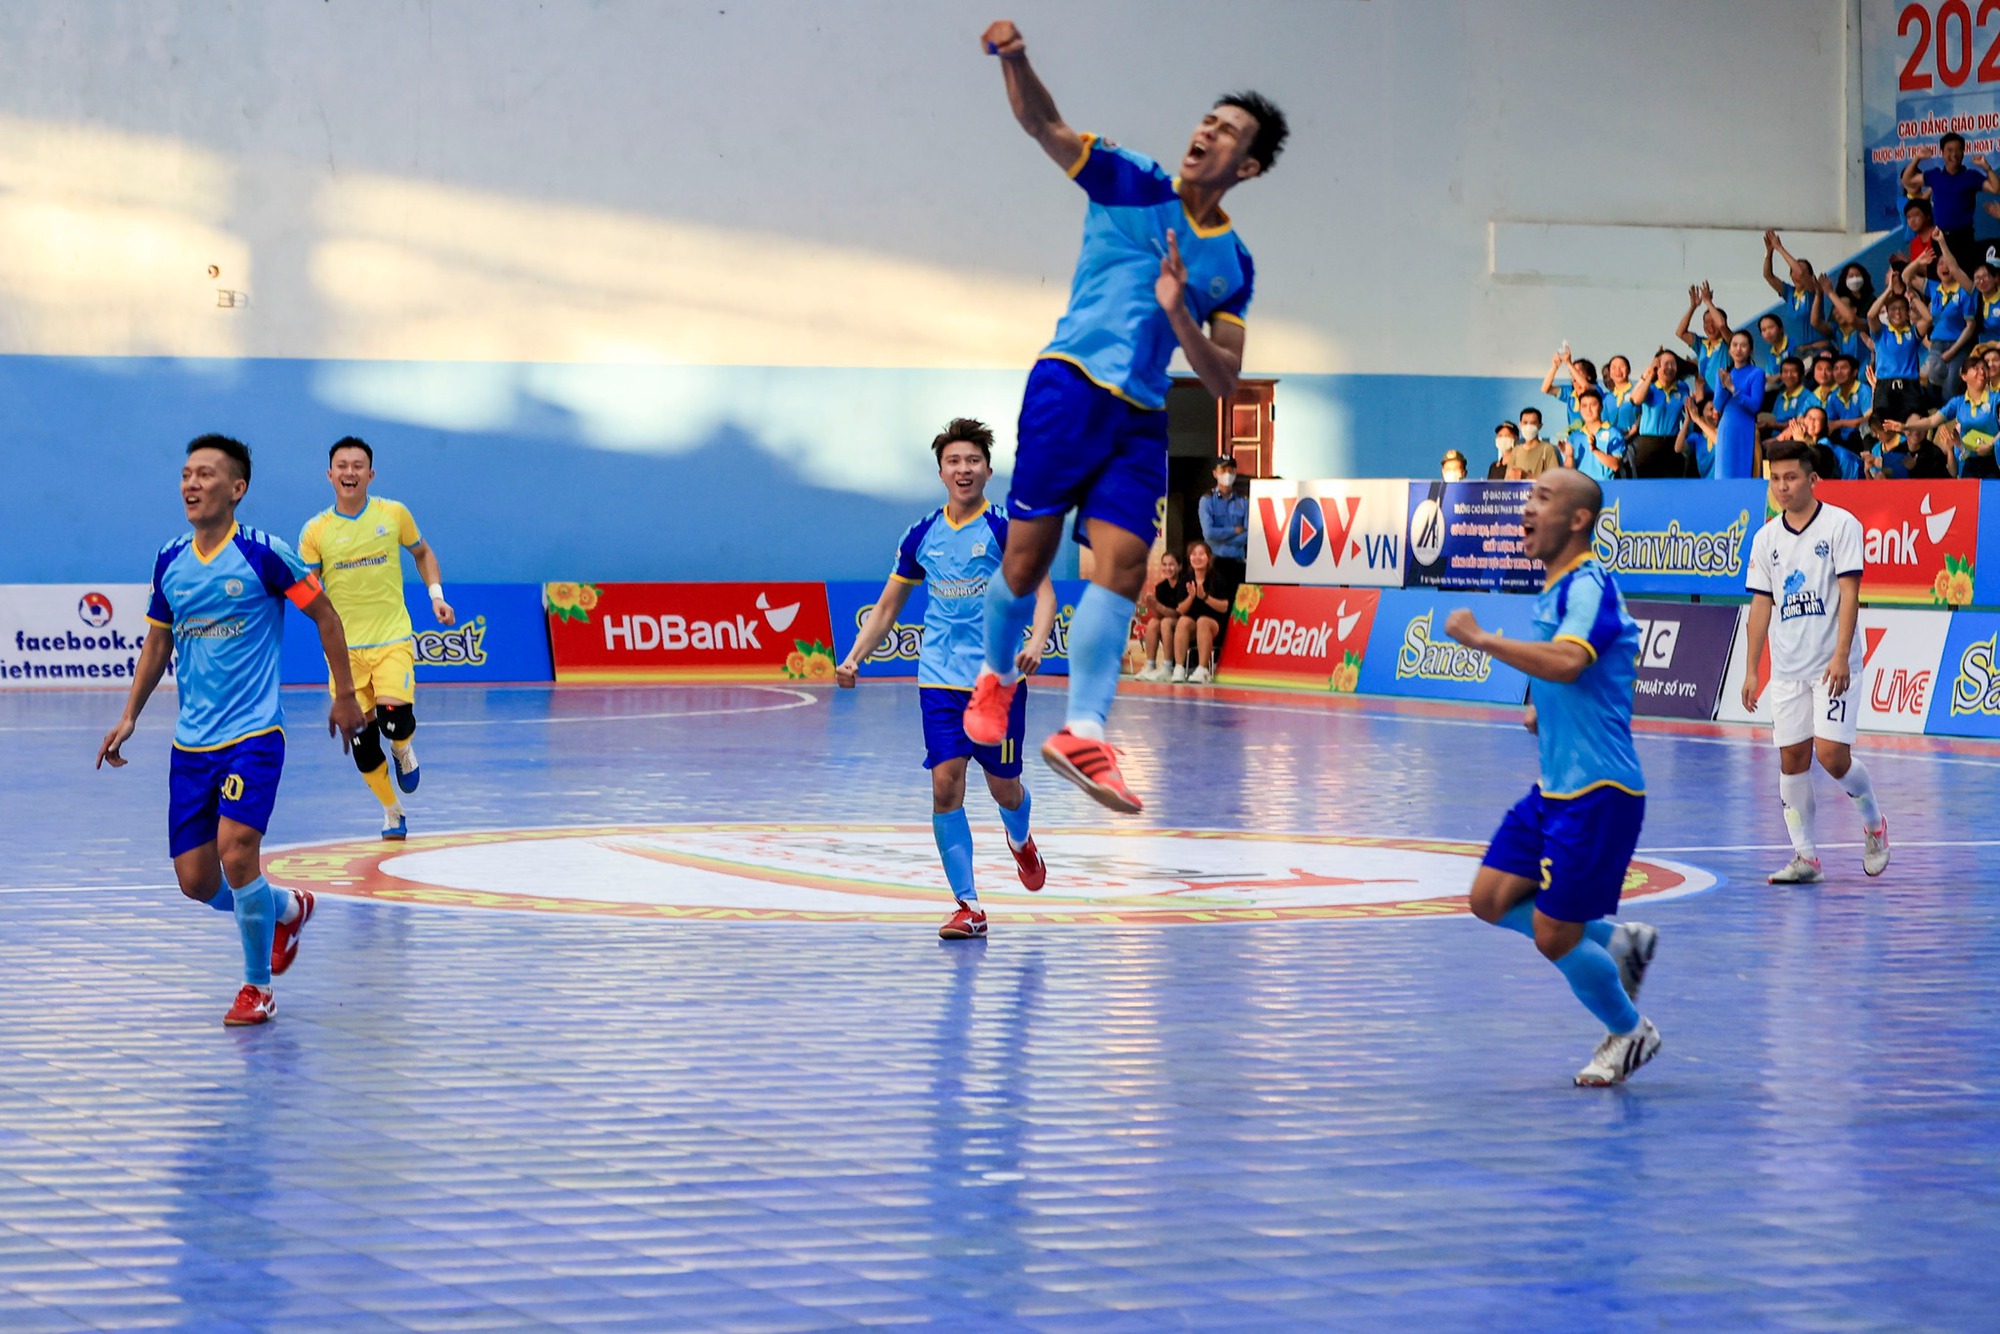 Giải Futsal VĐQG: Thái Sơn Nam TP.HCM và Sanvinest Khánh Hòa so kè quyết liệt  - Ảnh 1.